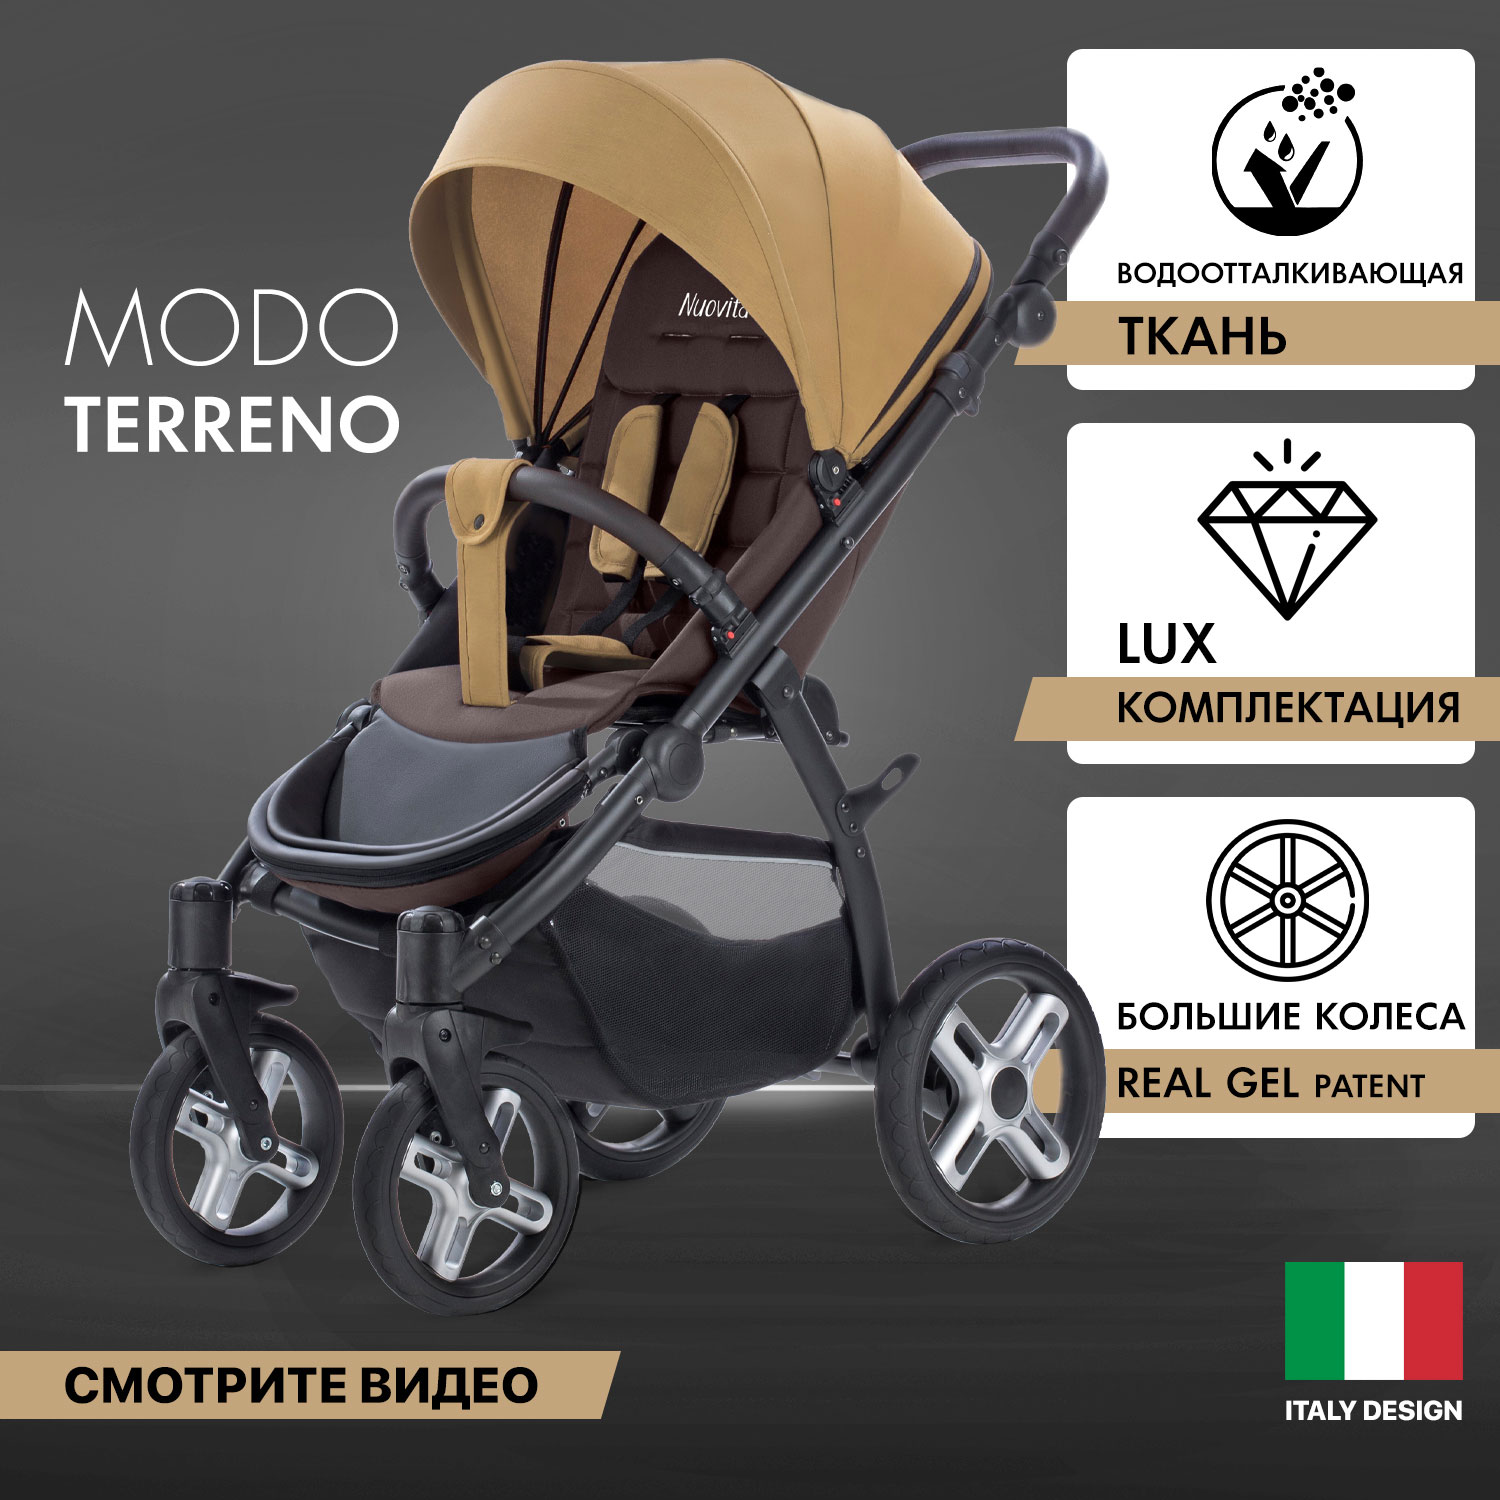 Прогулочная коляска Nuovita Modo Terreno Beige Marrone/Бежево-коричневый мягкий пол универсальный 60 x 60 бежево коричневый